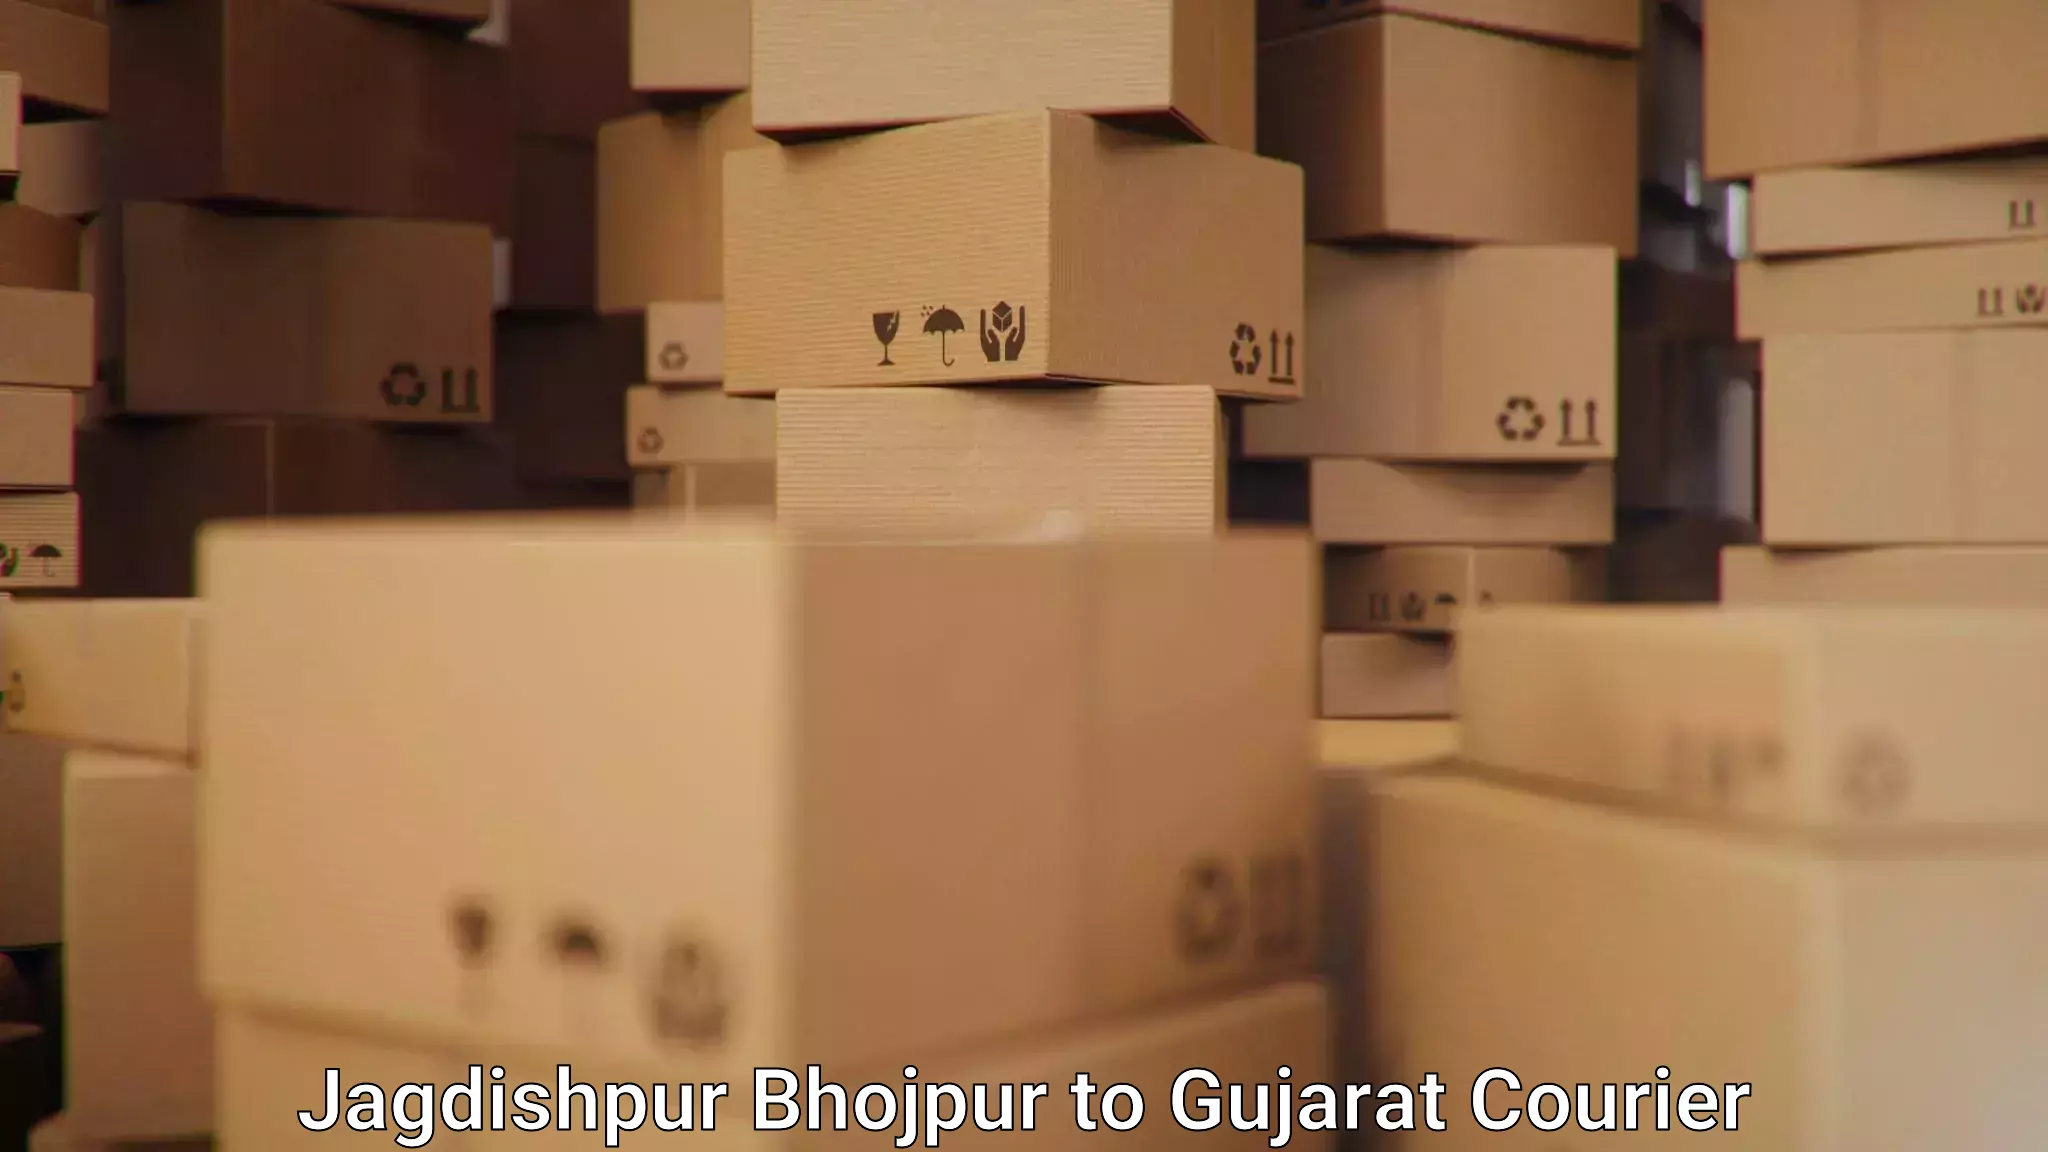 Efficient order fulfillment in Jagdishpur Bhojpur to Gujarat